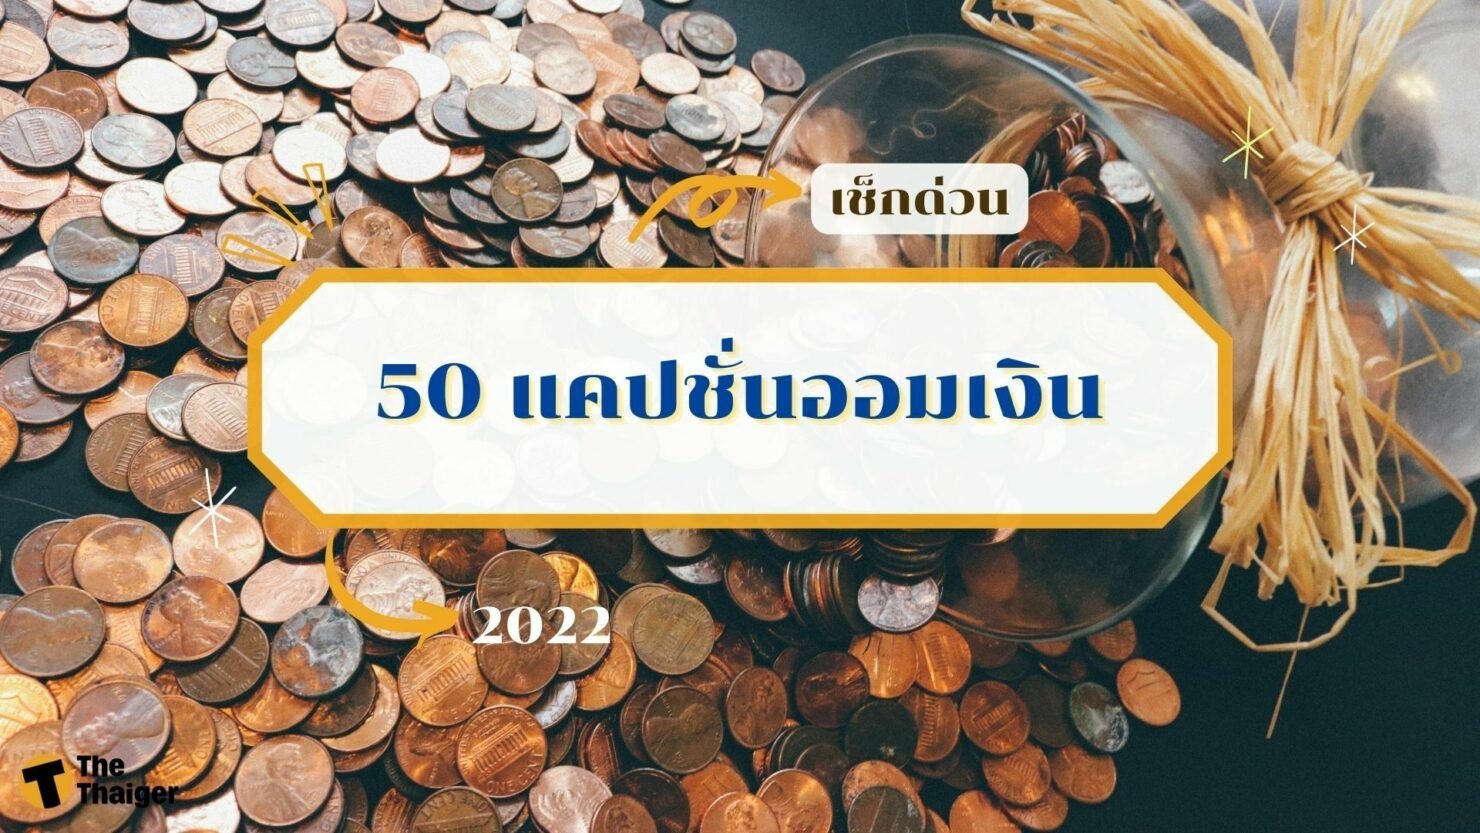 50 แคปชั่นออมเงิน สำหรับมนุษย์เงินเดือน เอาไว้เรียกยอดไลค์ | Thaiger ข่าวไทย